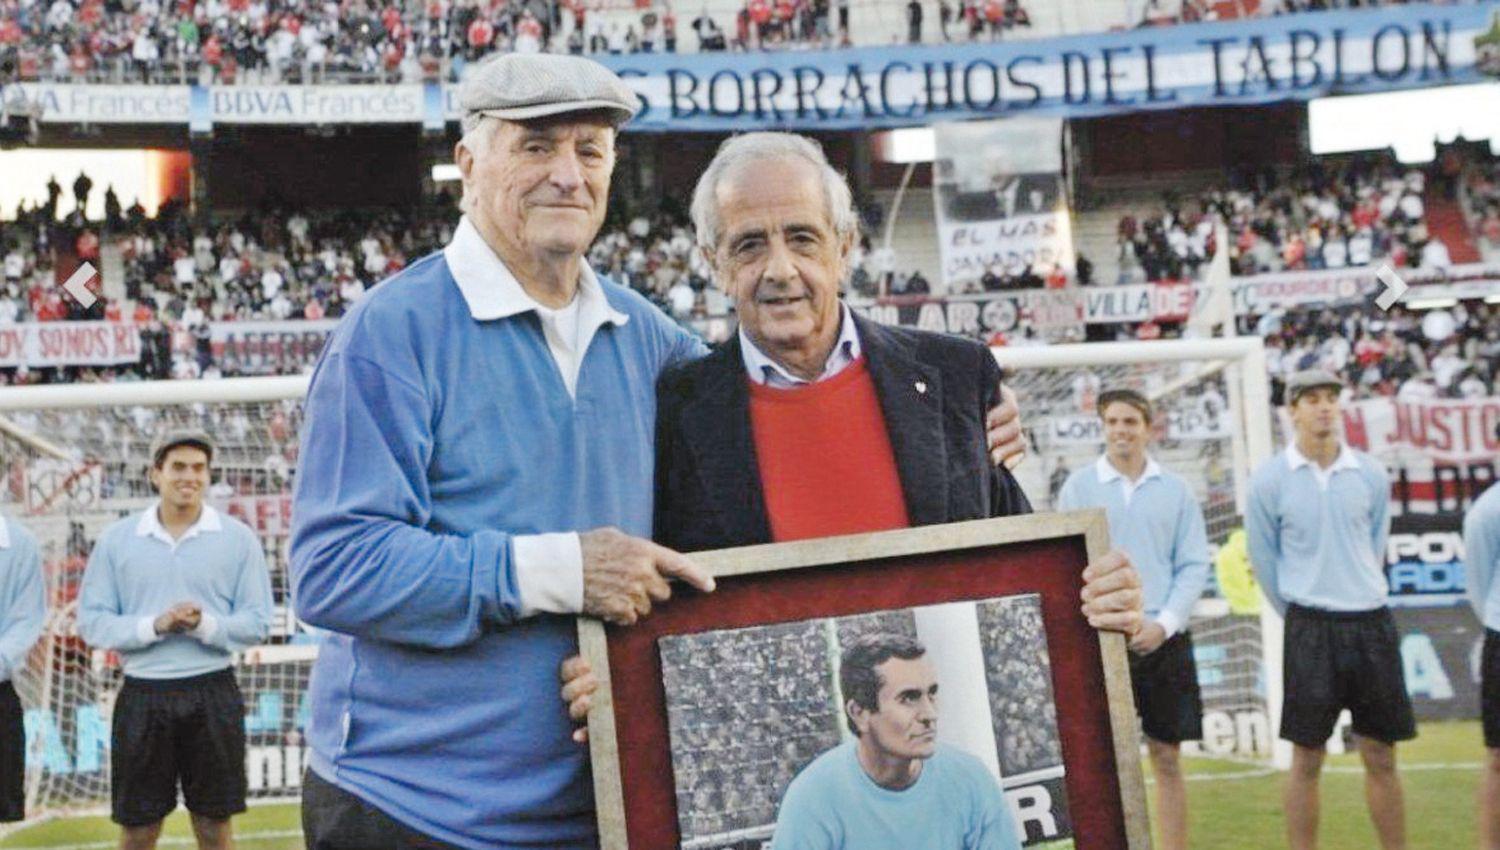 EMBLEMA Don Amadeo recibió el reconocimiento y la admiración de los clubes m�s importantes del país
